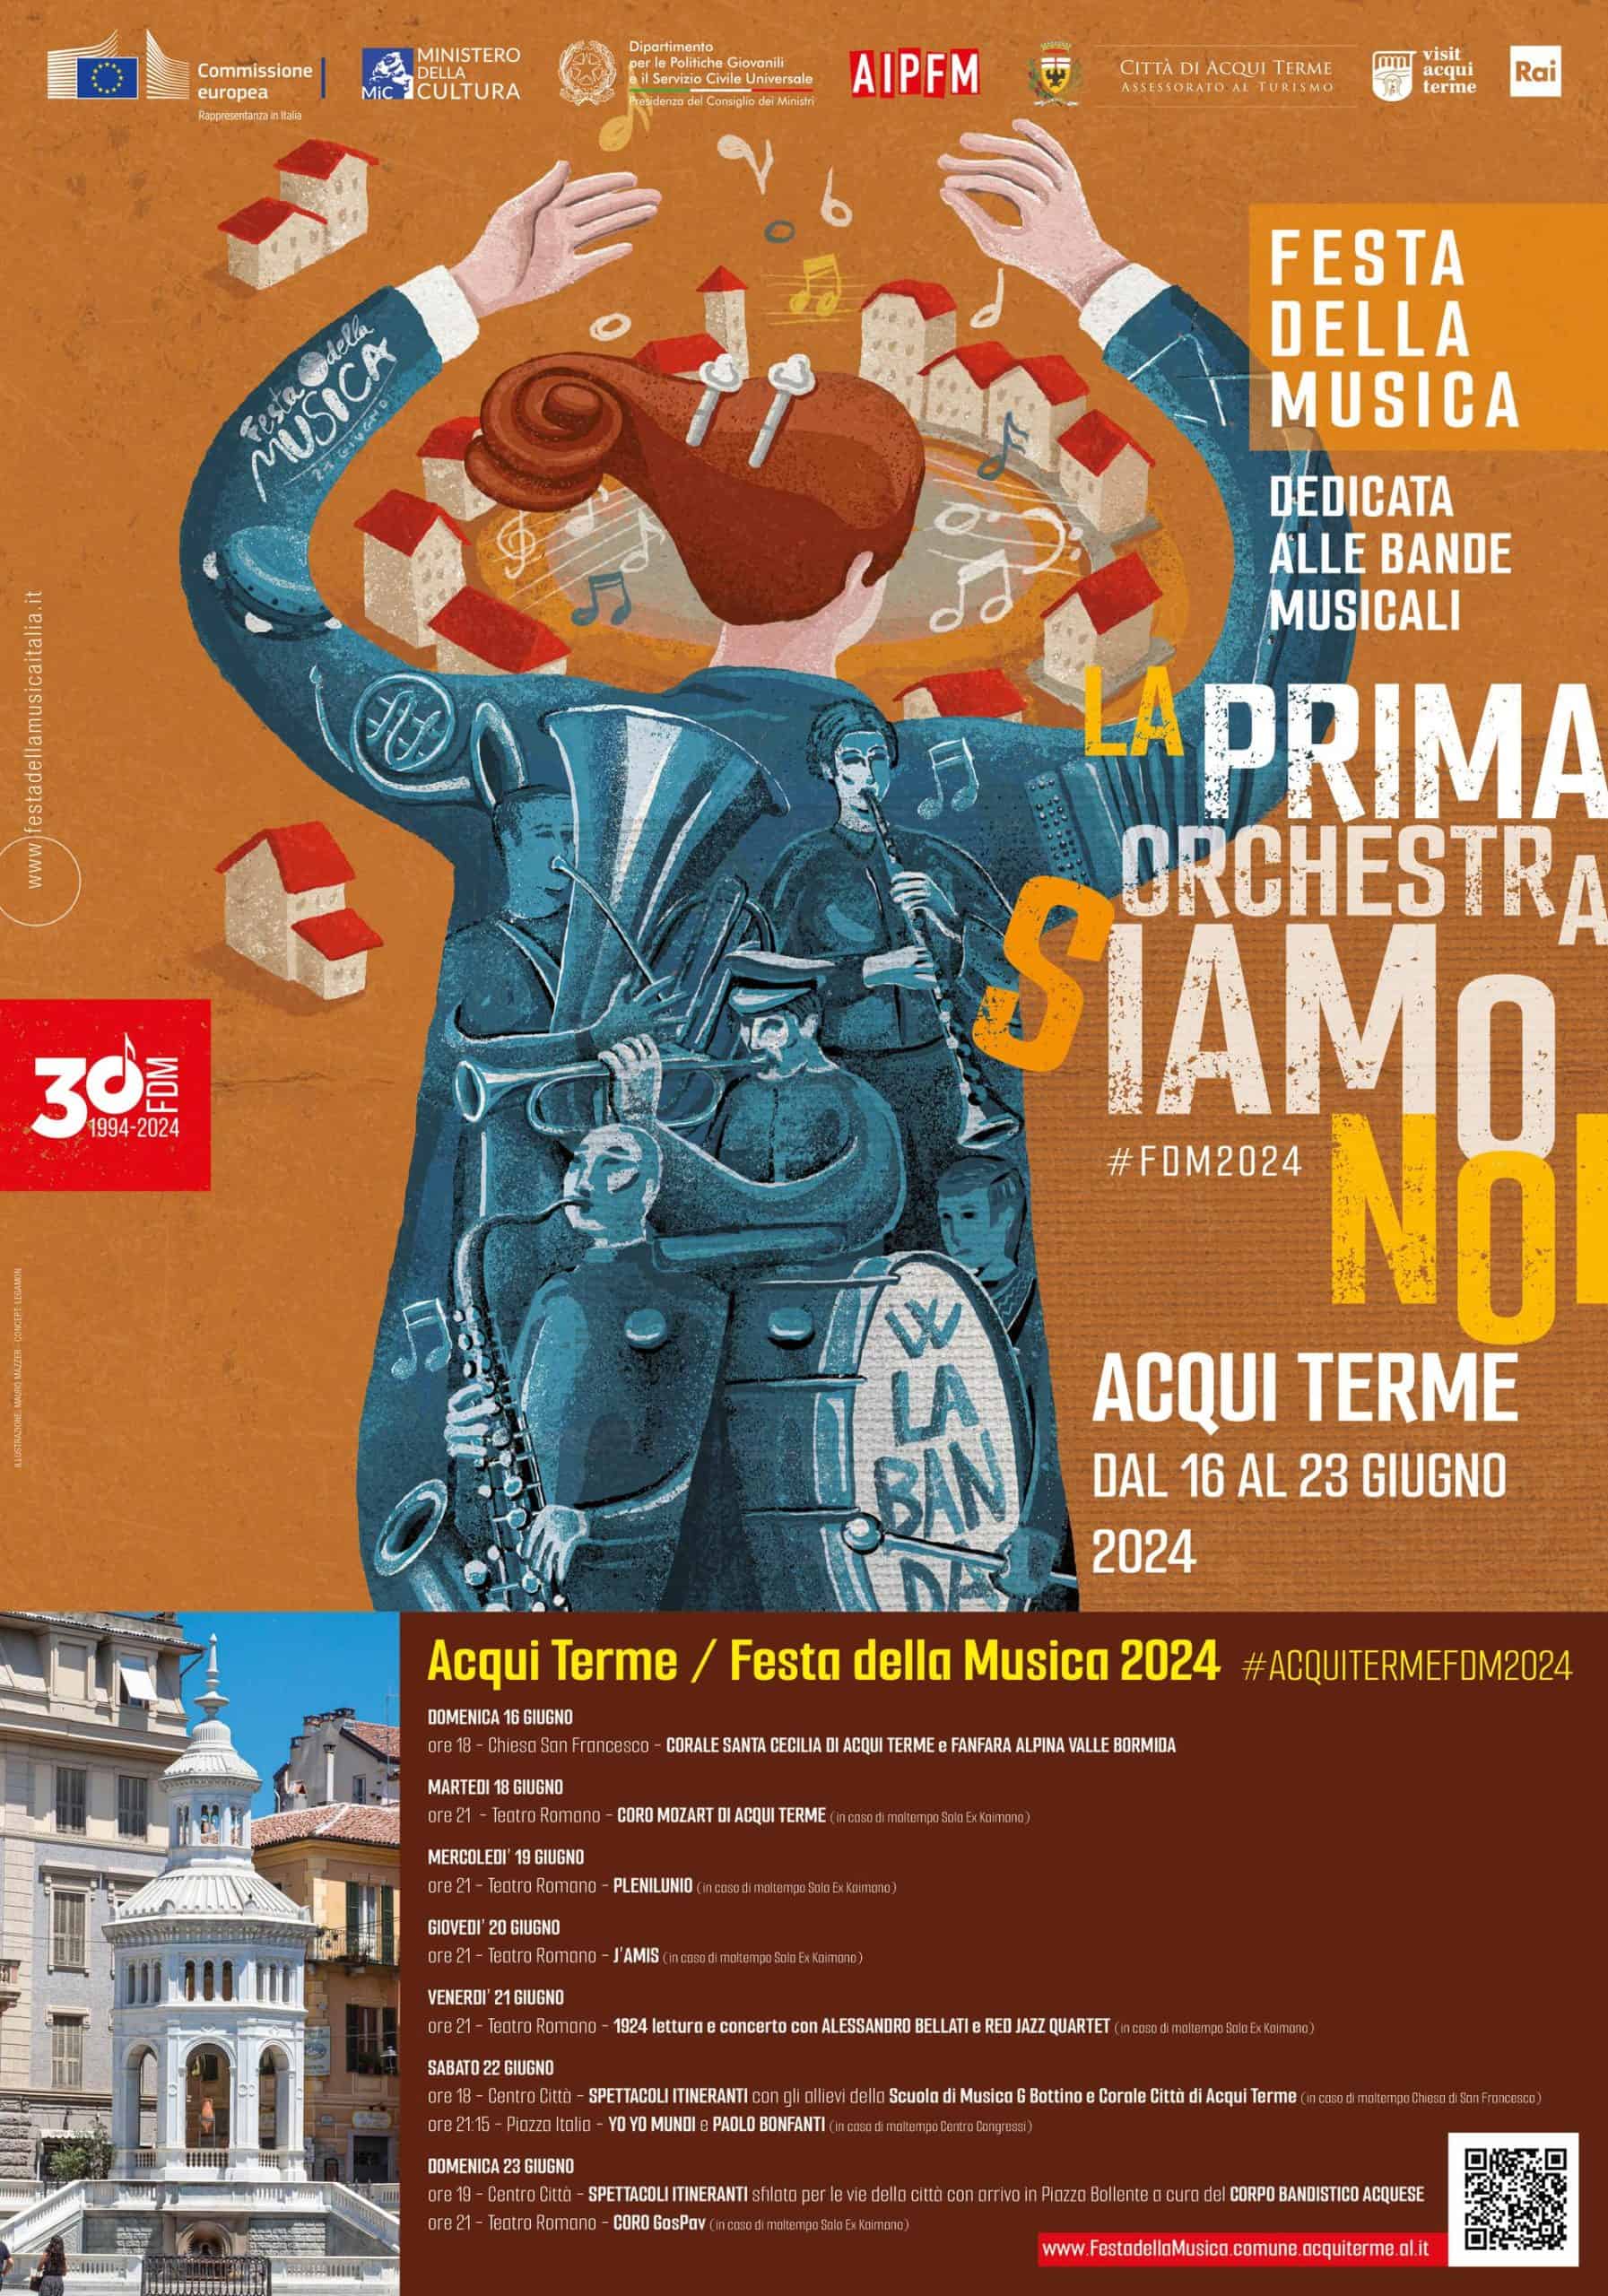  COMUNICATO STAMPA FESTA DELLA MUSICA 2024 – dal 16 al 23 Giugno – Acqui Terme